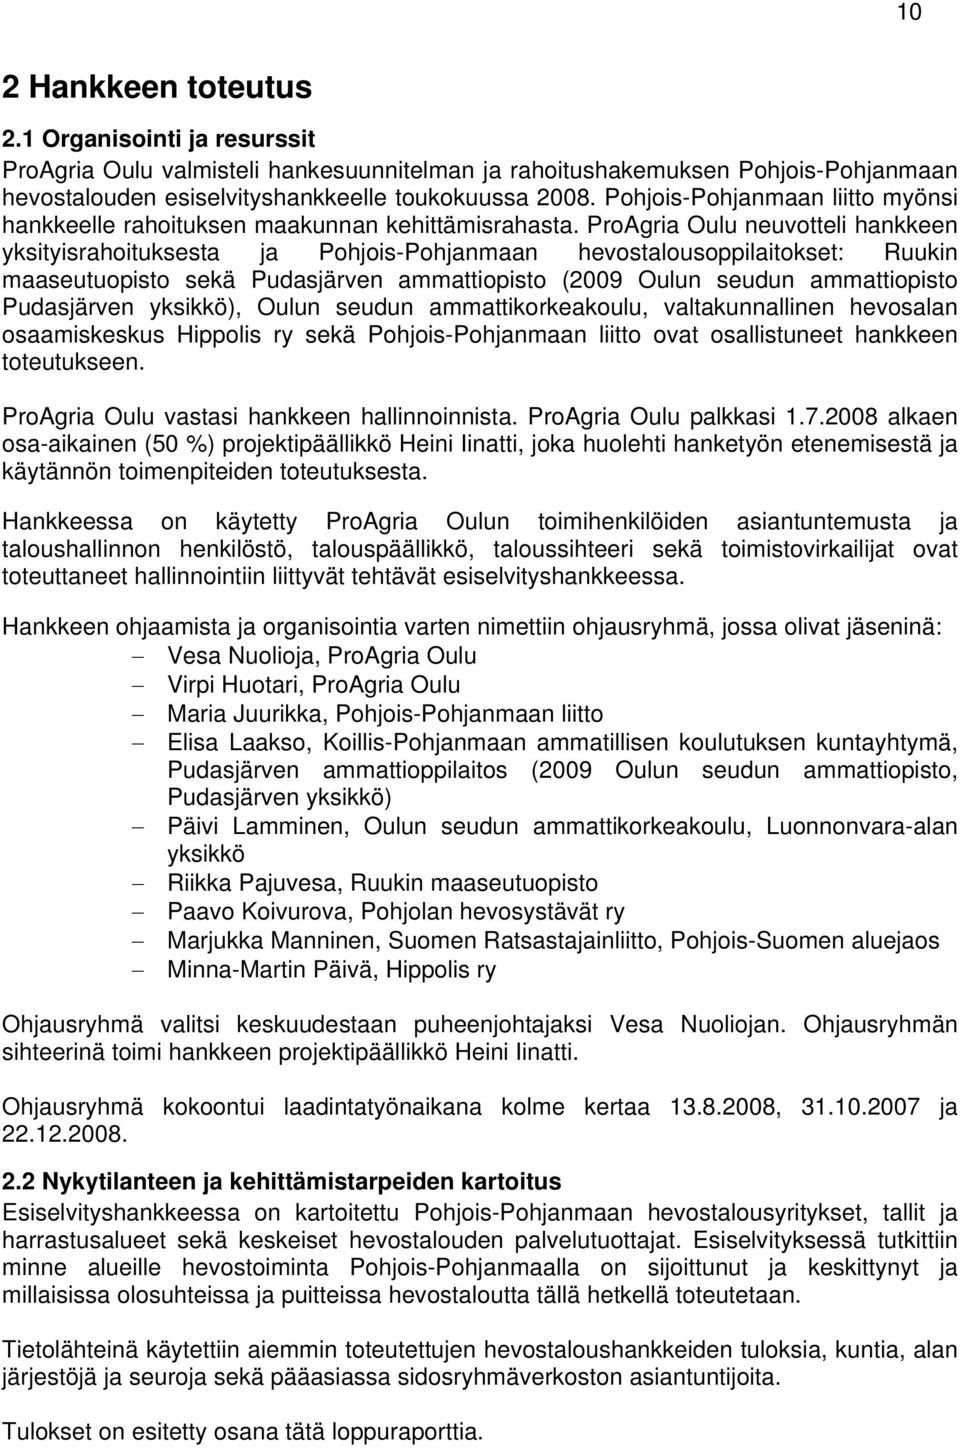 ProAgria Oulu neuvotteli hankkeen yksityisrahoituksesta ja Pohjois-Pohjanmaan hevostalousoppilaitokset: Ruukin maaseutuopisto sekä Pudasjärven ammattiopisto (2009 Oulun seudun ammattiopisto